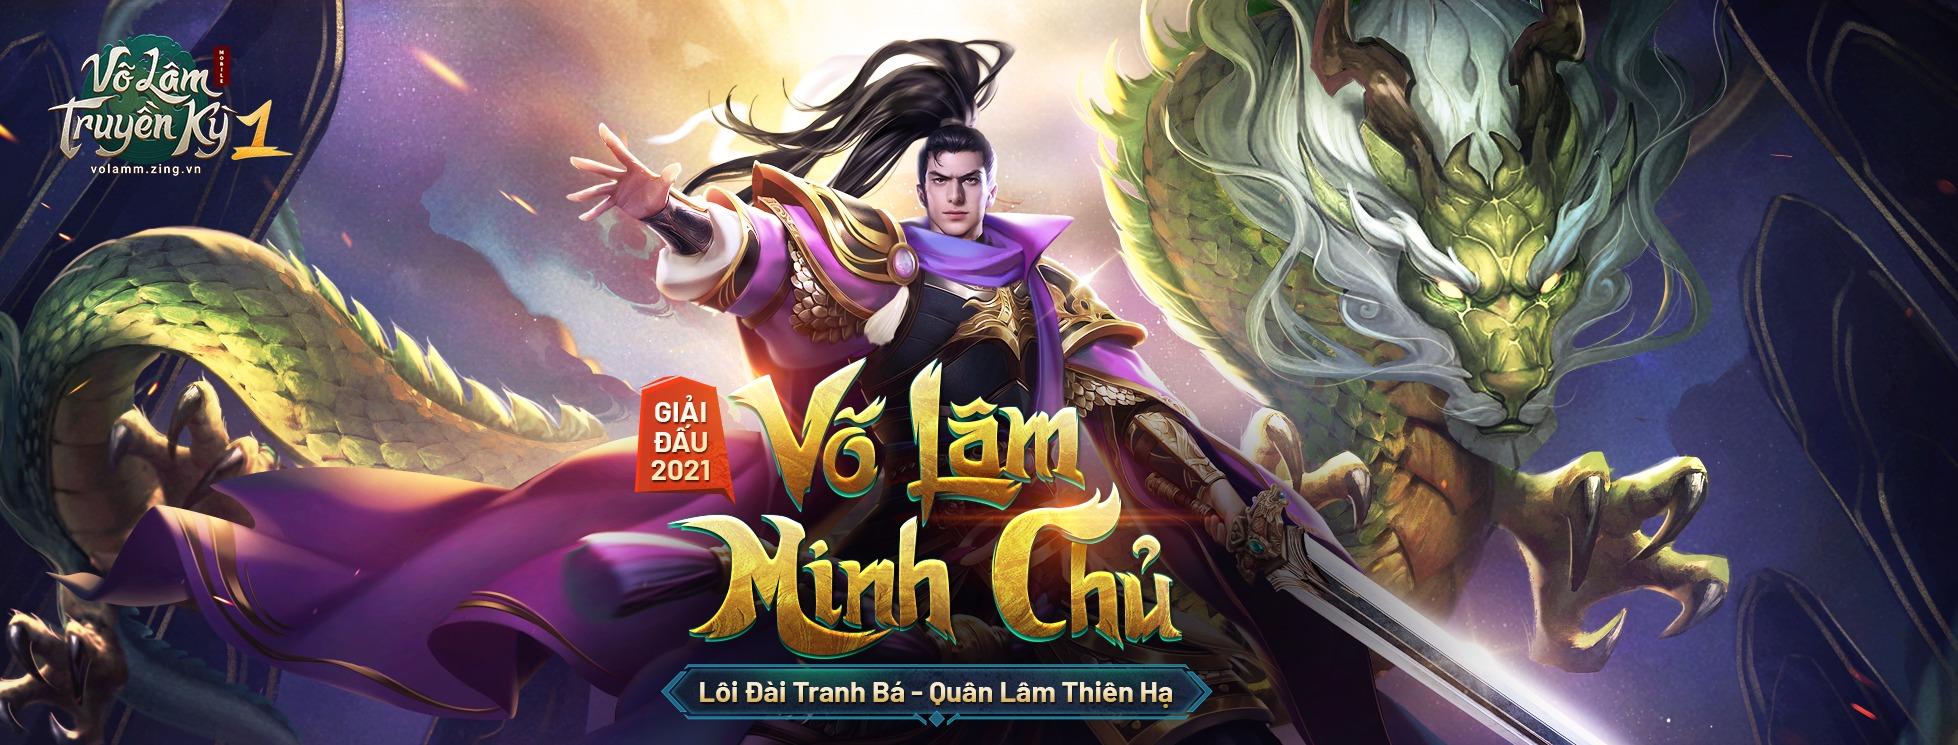 VLTK1M bước vào loạt đấu cuối cùng, xác định ngôi Võ Lâm Minh Chủ